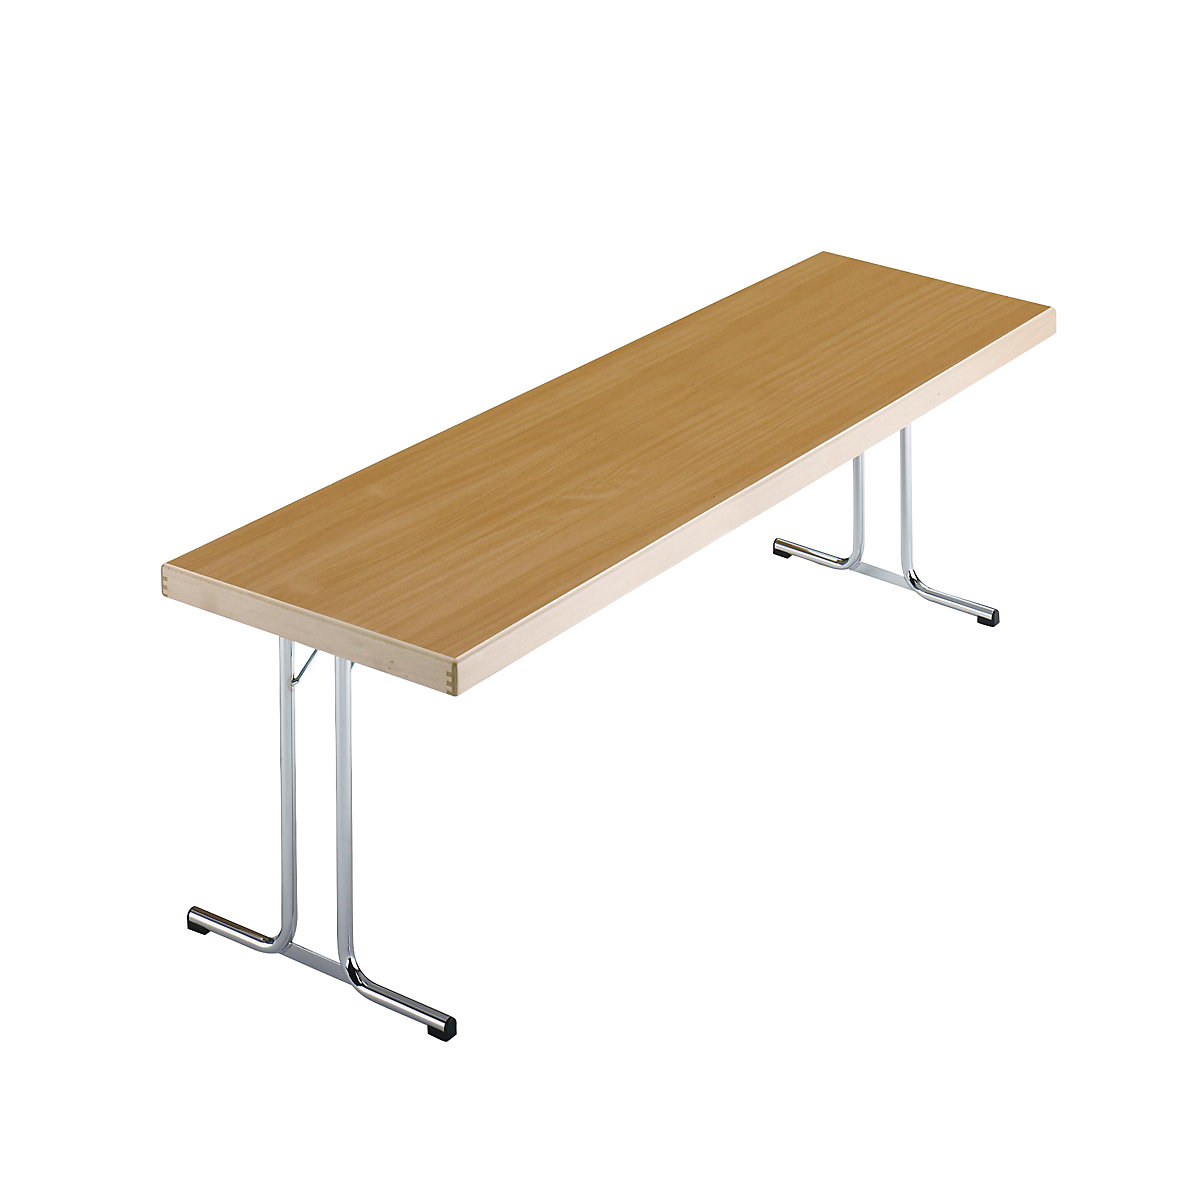 Sklápací stôl, podstavec s dvojitými nohami tvaru T, 1700 x 700 mm, podstavec pochrómovaný, doska vzor buk-12